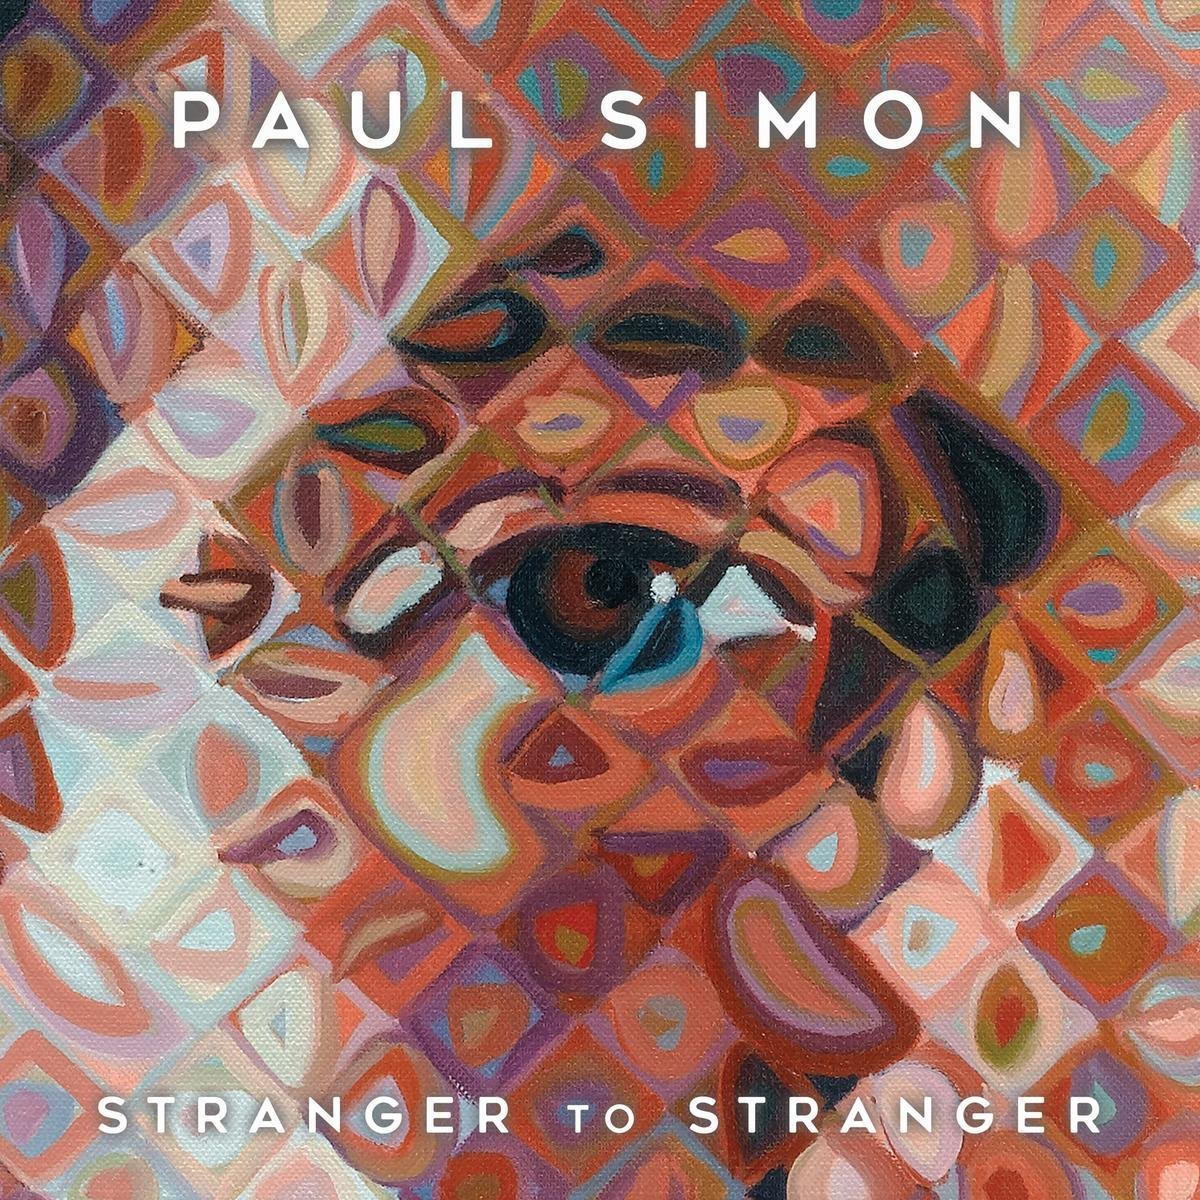 Paul Simon's Stranger to Stranger